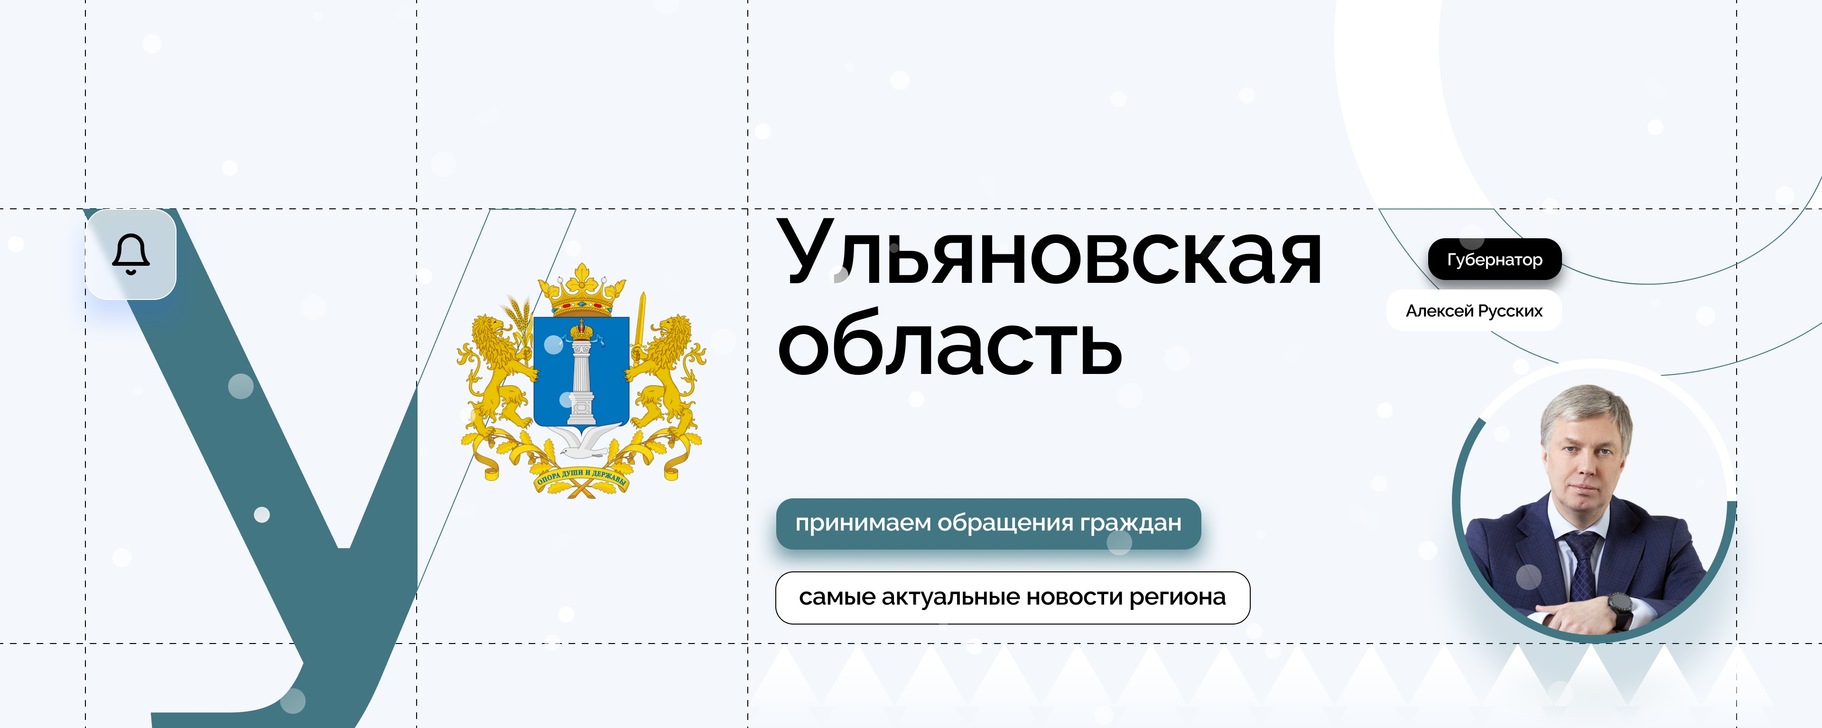 Ульяновская область присоединилась к Всероссийскому проекту «Всей семьёй».